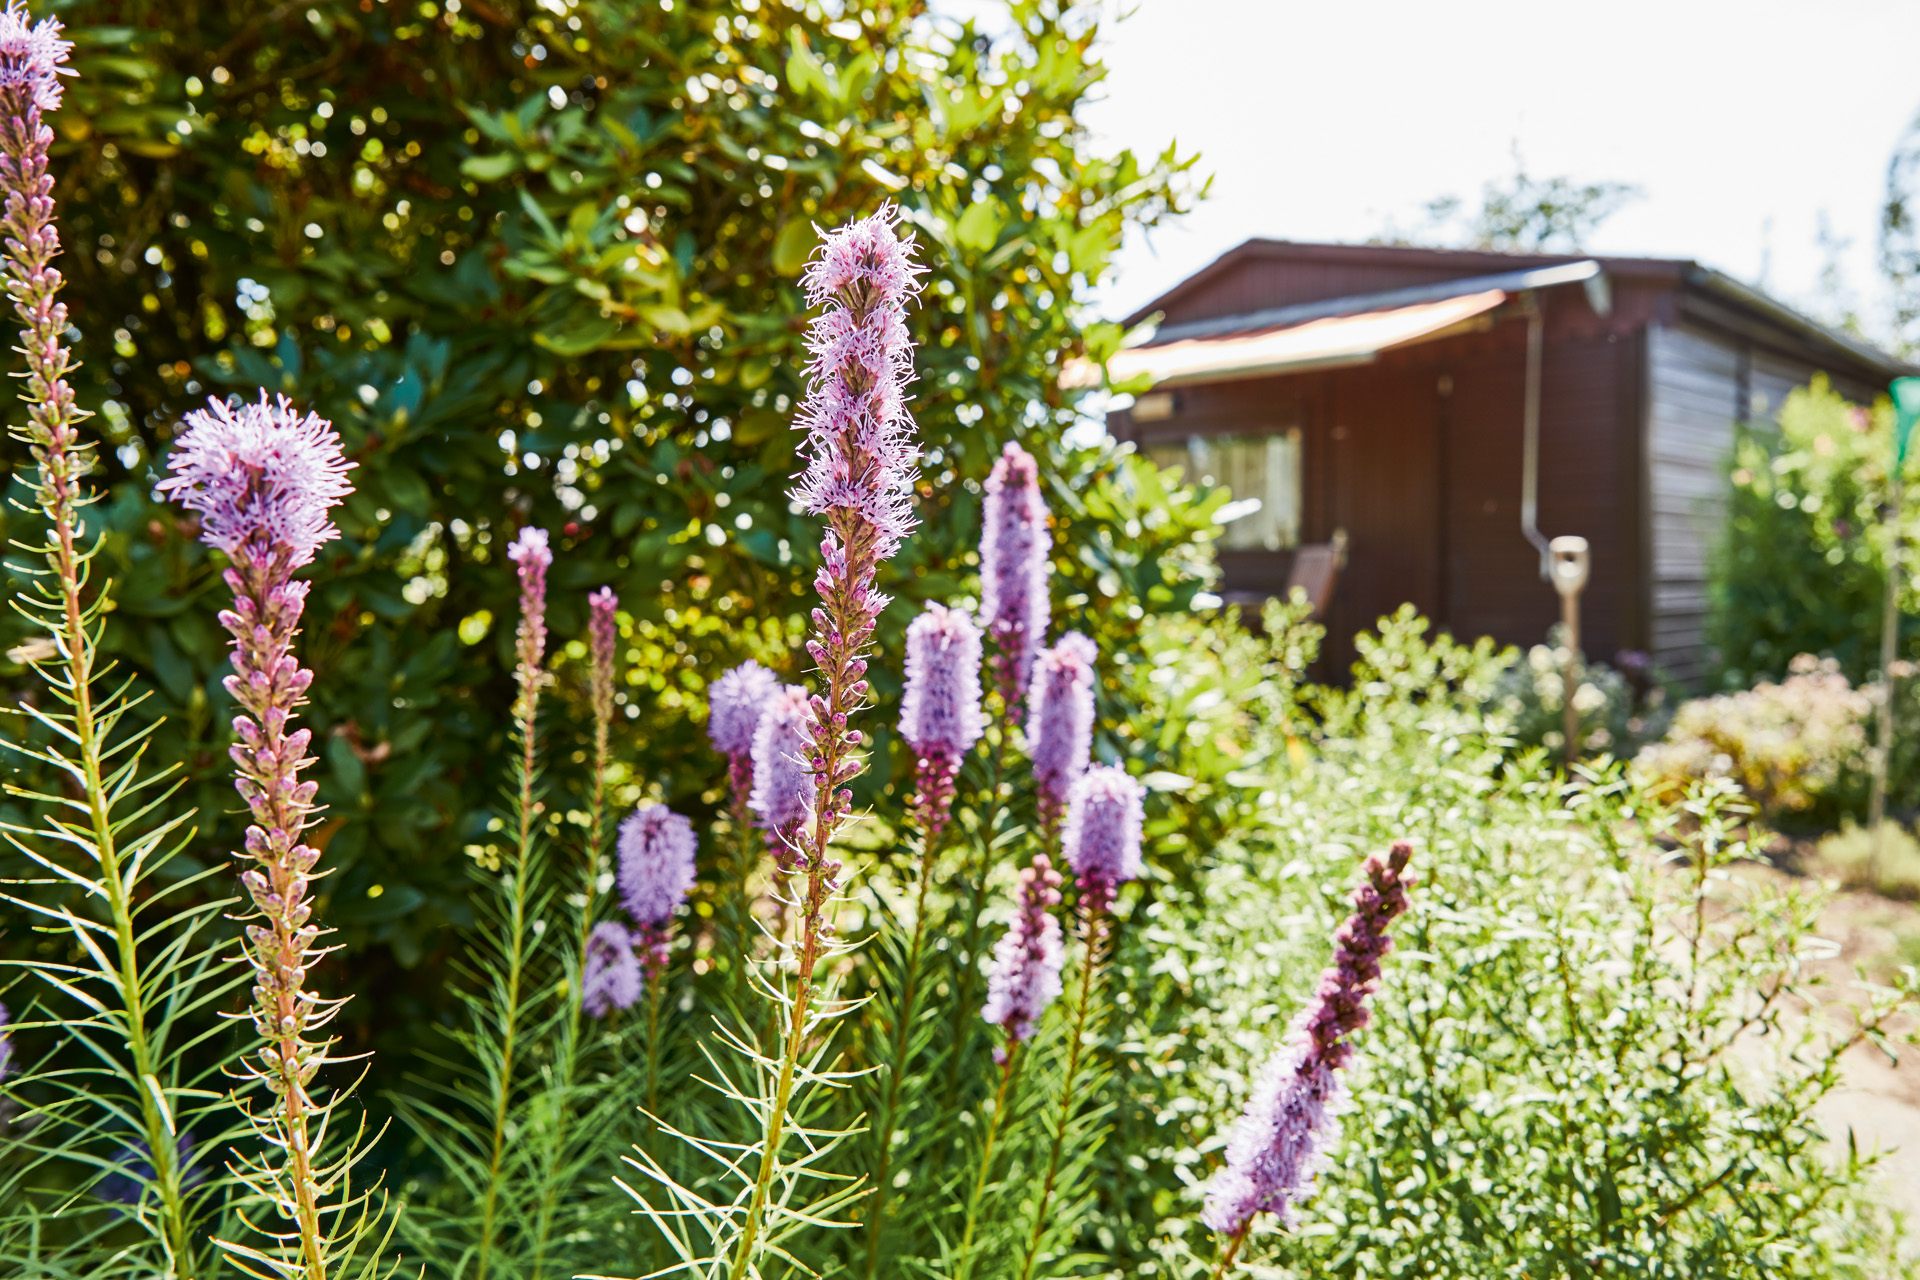 Fioletowe kwiaty wieloletnie w ogrodzie, w tle altanka ogrodowa z markizą